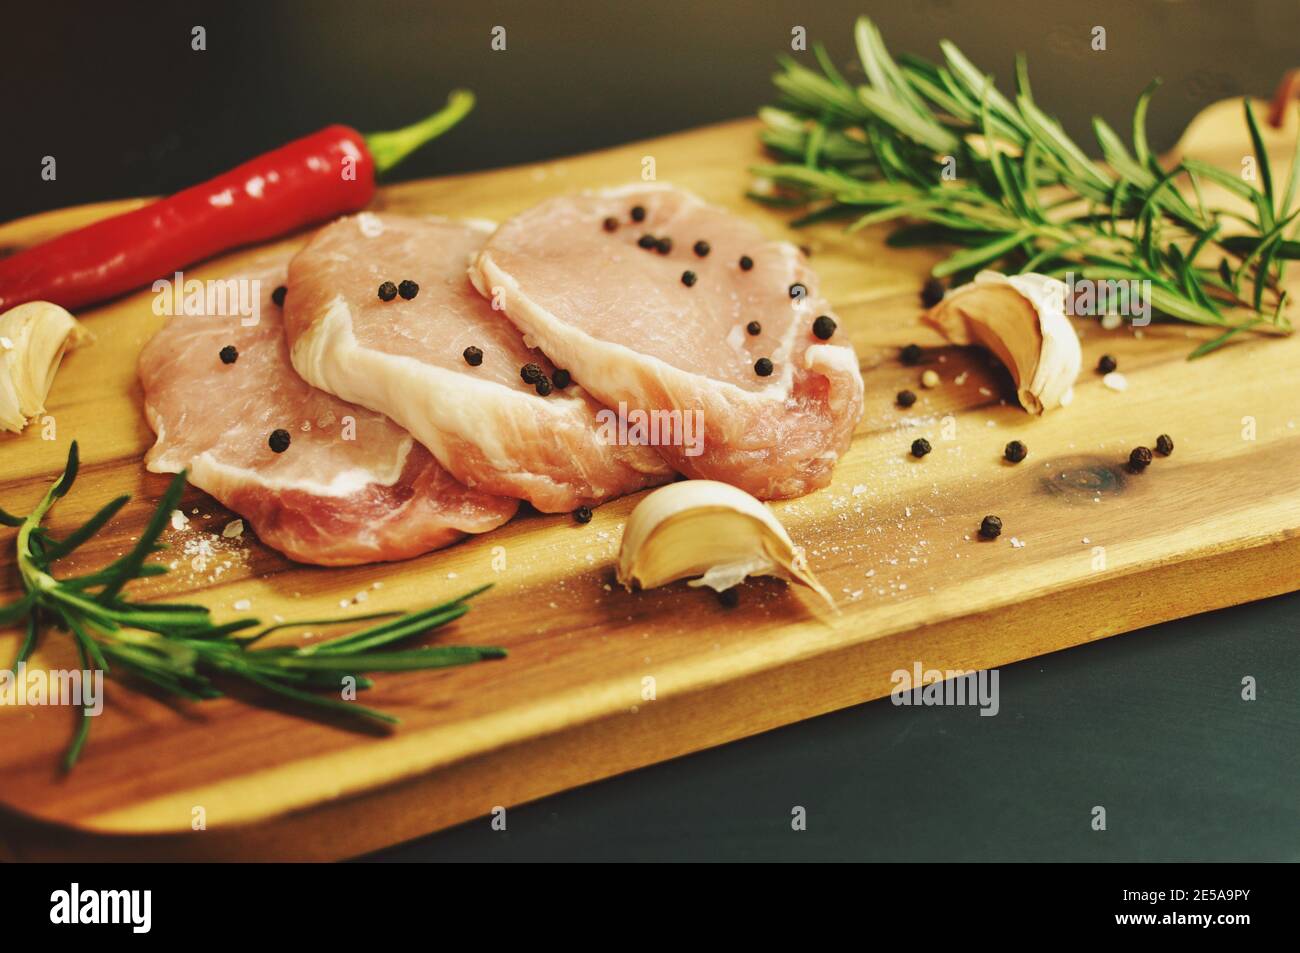 Frais de porc cru non cuit la viande filet plat avec le romarin, le poivre, sel, piment rouge, de l'ail sur planche de bois et fond noir. Banque D'Images